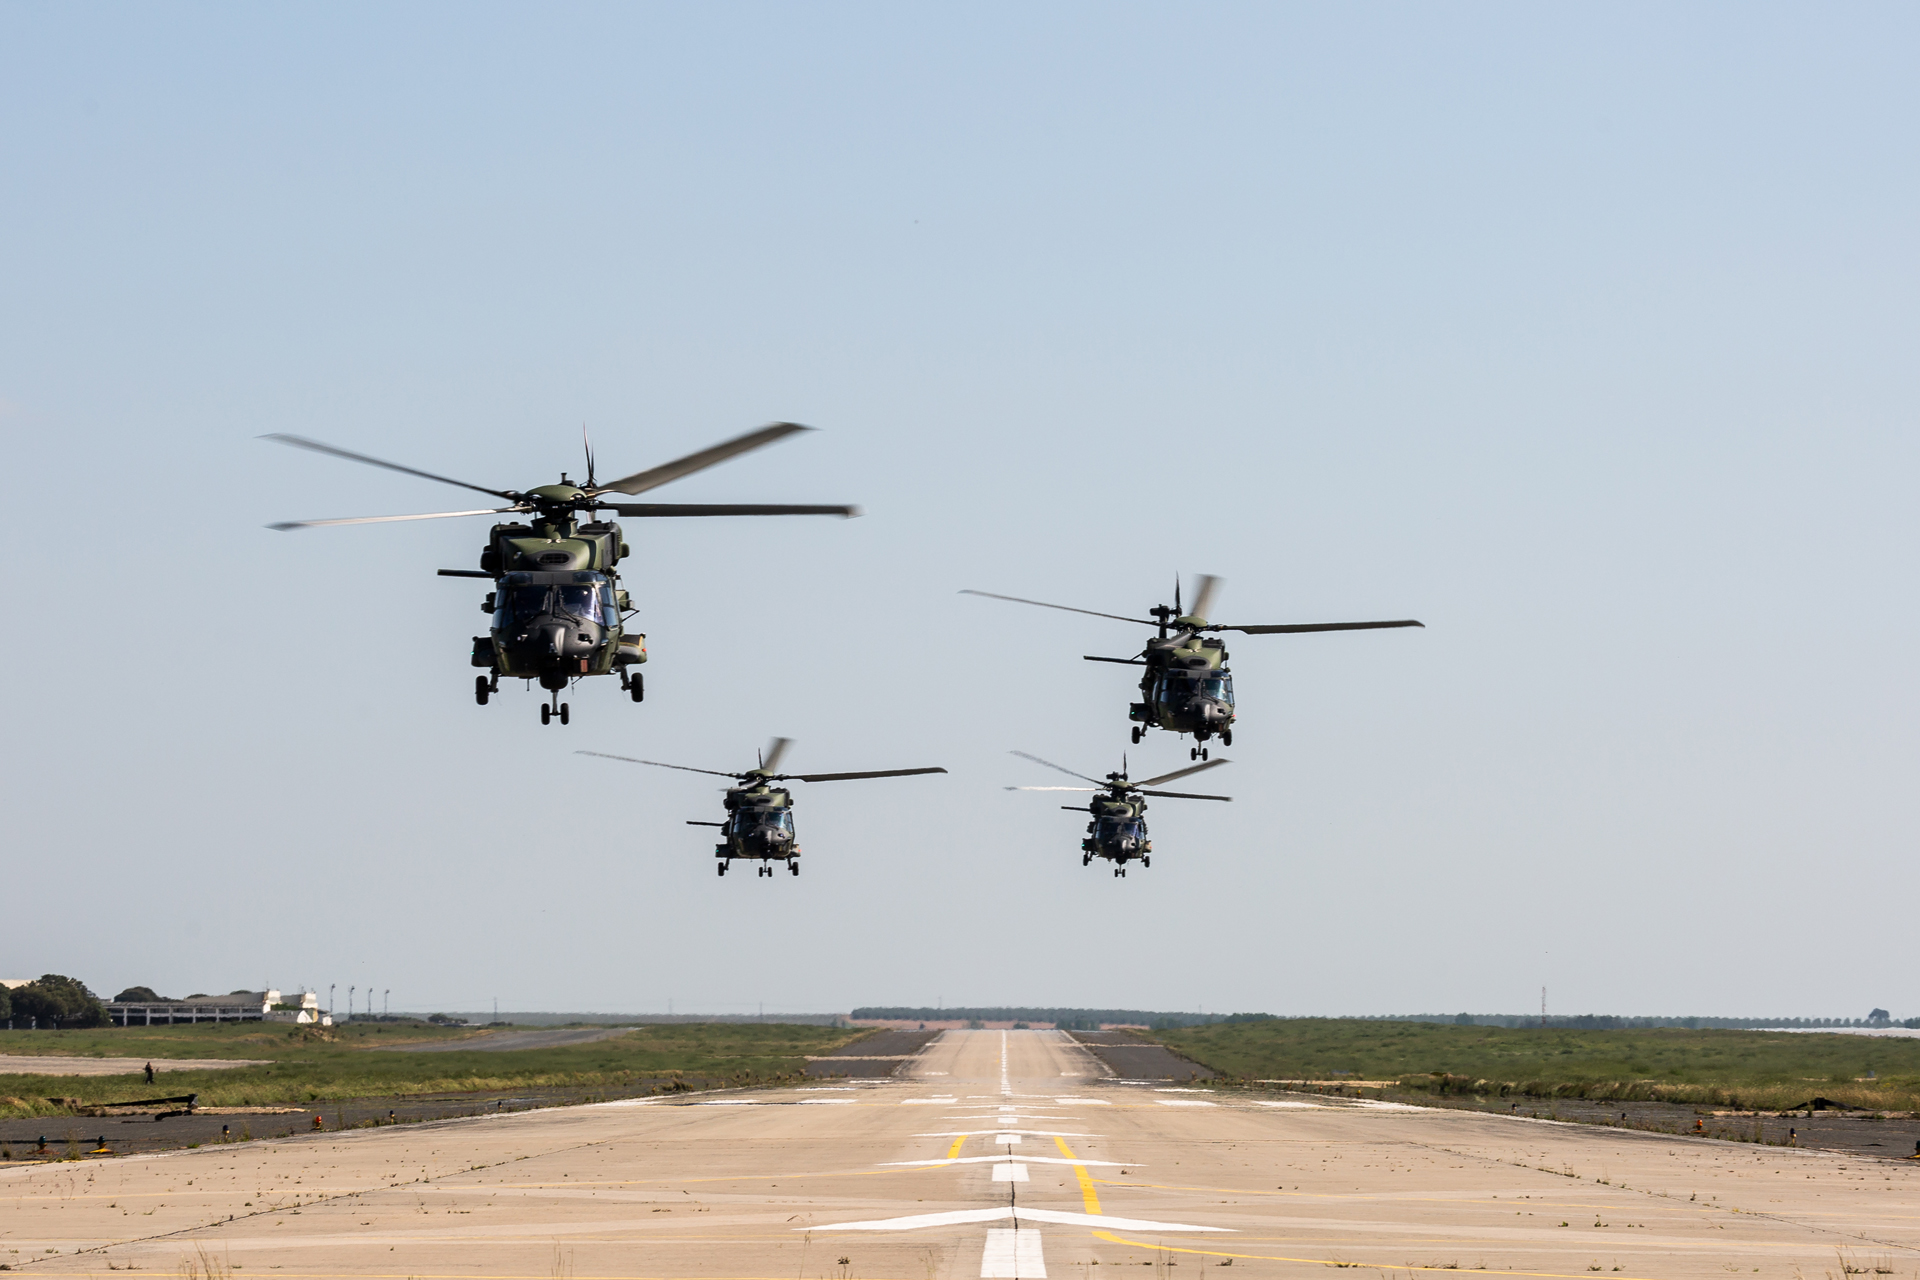 Seis helicpteros NH90 alemes treinam em Beja